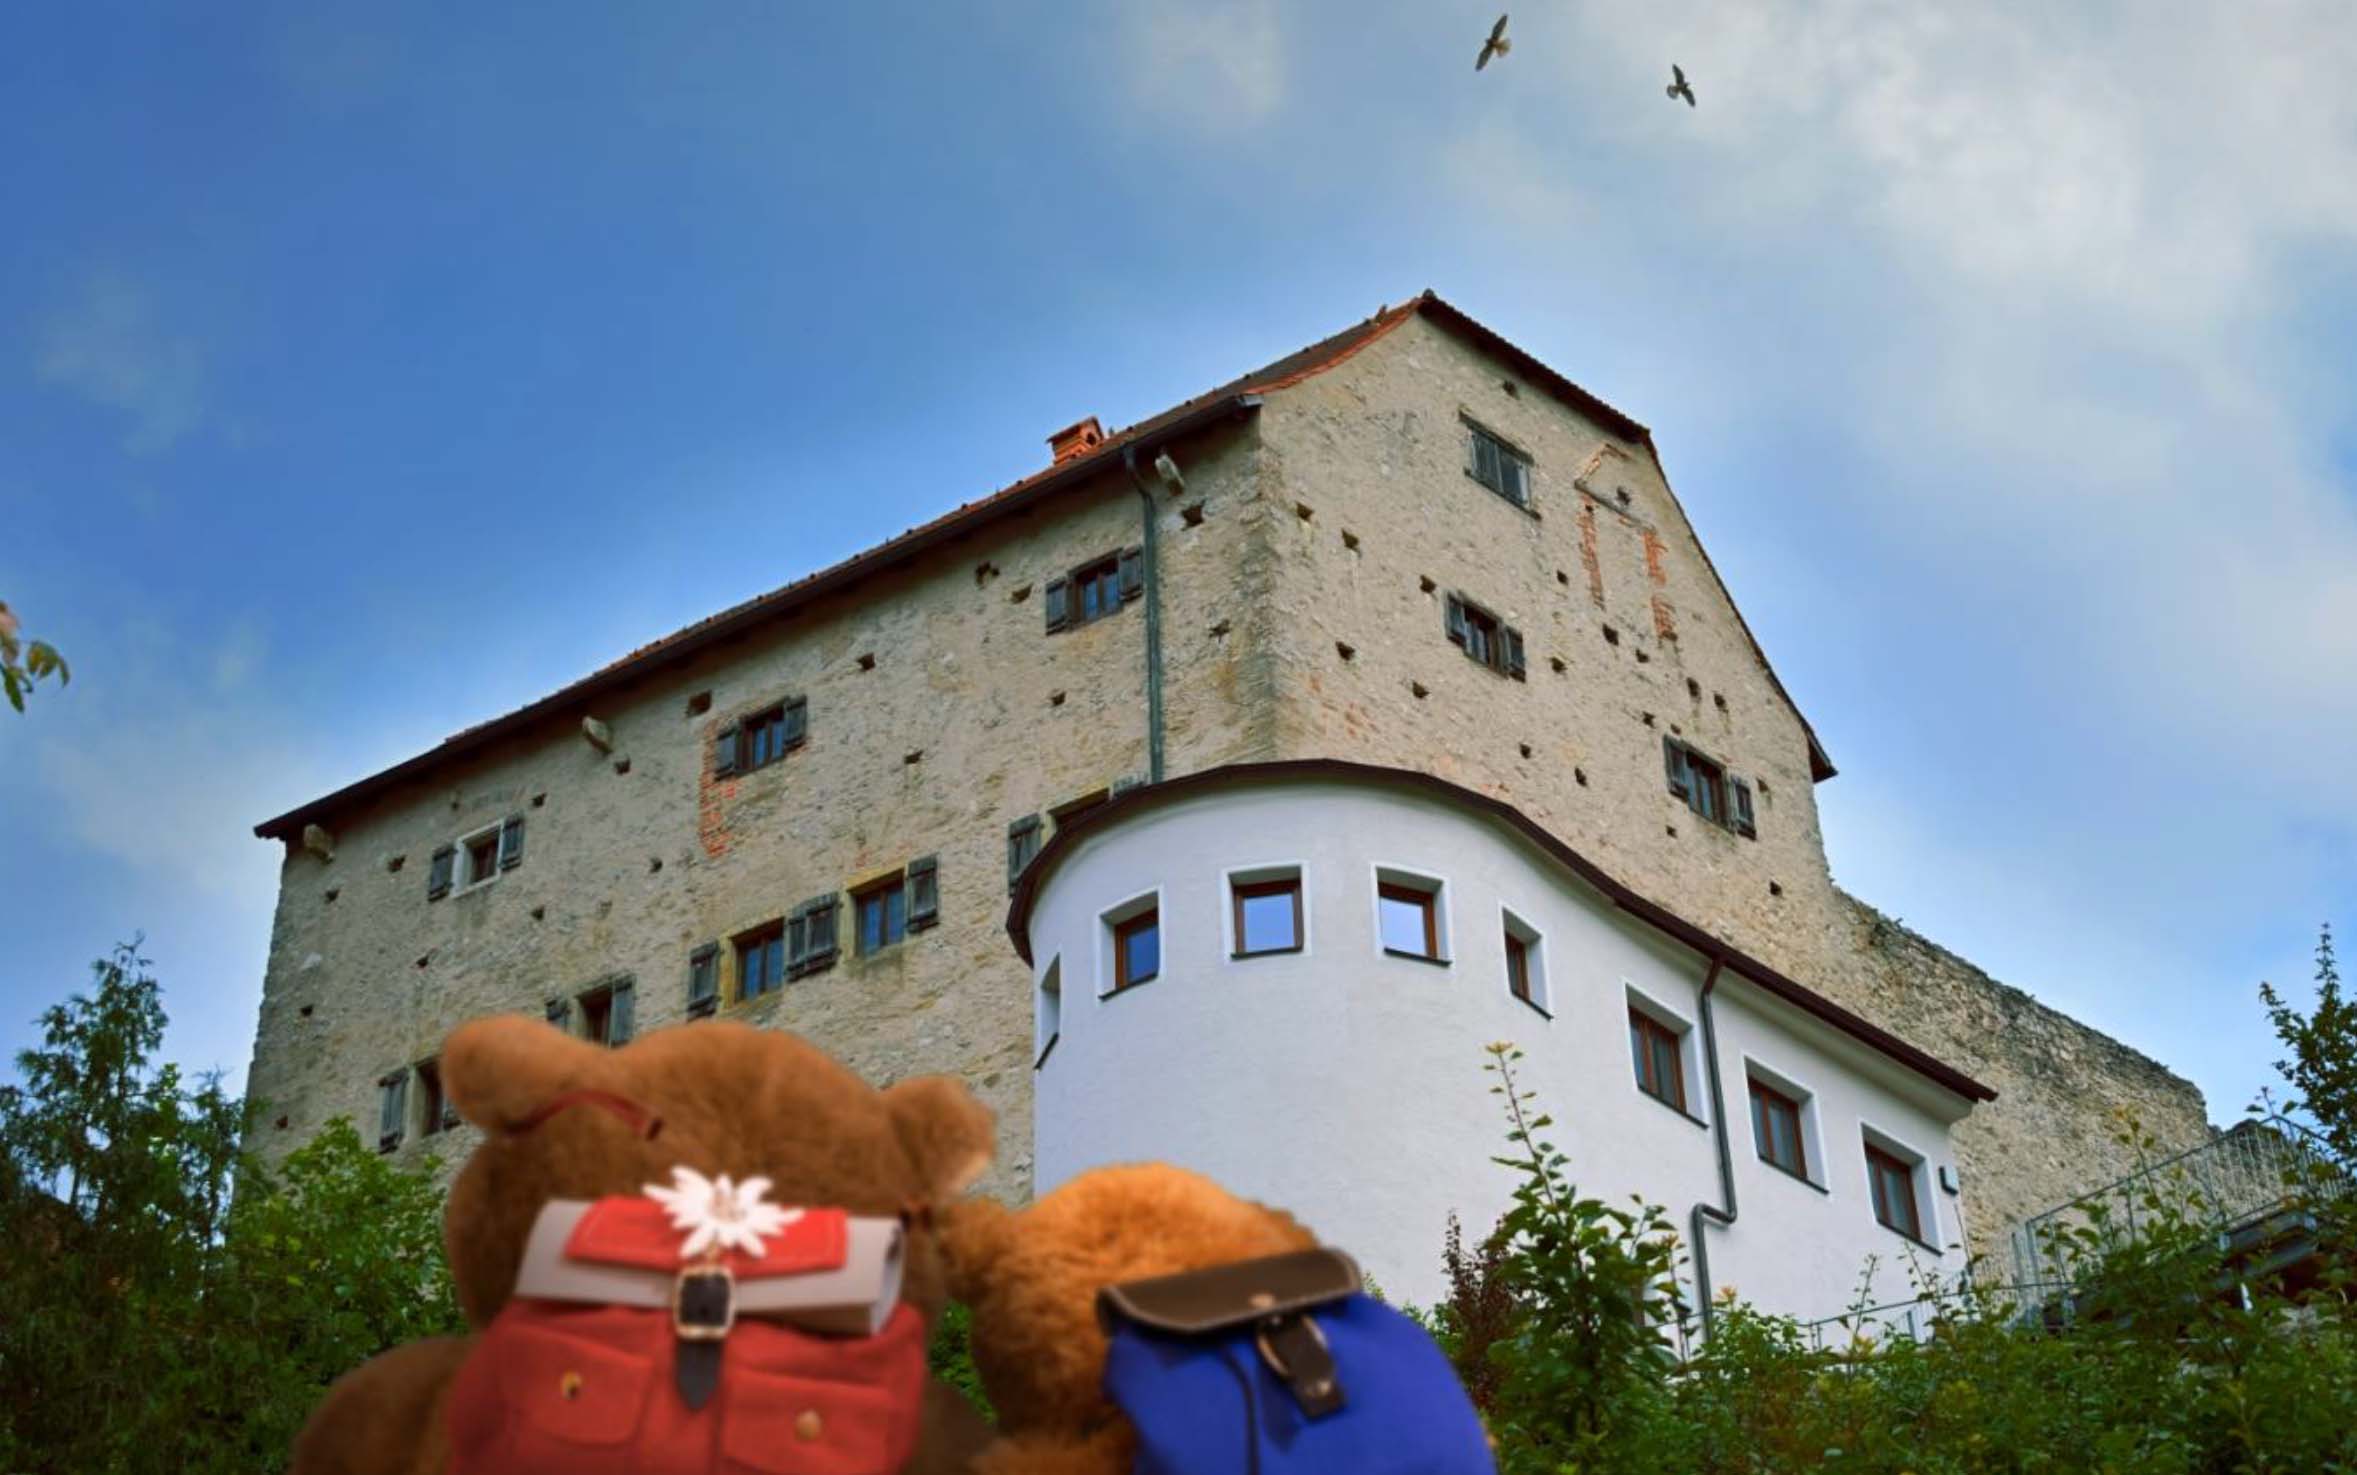 Der kleine Bär, der Opa und die Burg - Bären vor der Burg